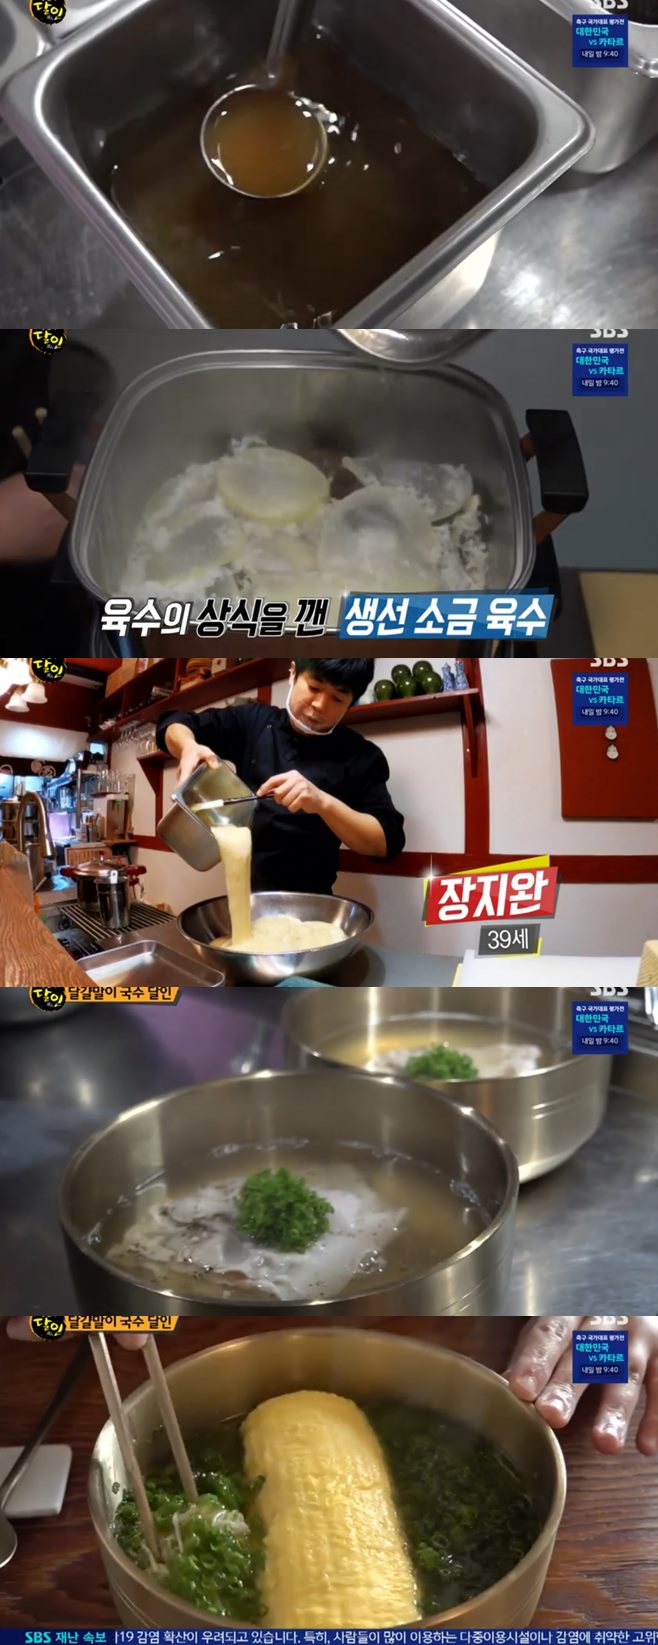 ‘생활의 달인’ 부산 달걀말이 국수 달인(야스마루)vs프랑스 가정식 달인(몽쉐프) 맛집